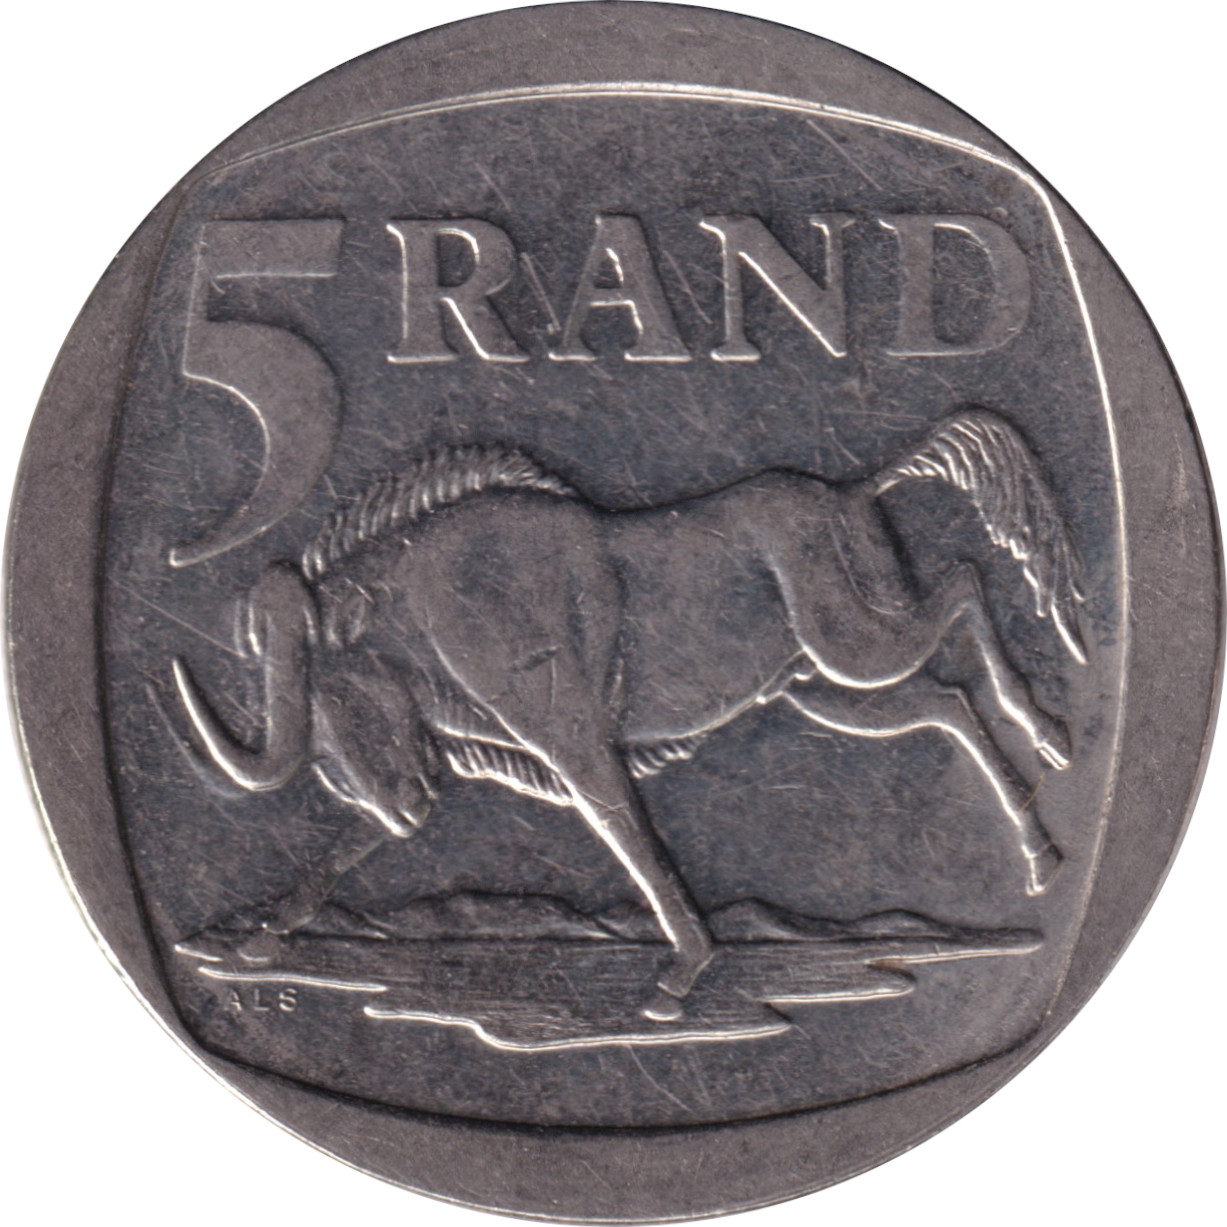 5 rand - Armoiries modifiées - Unie